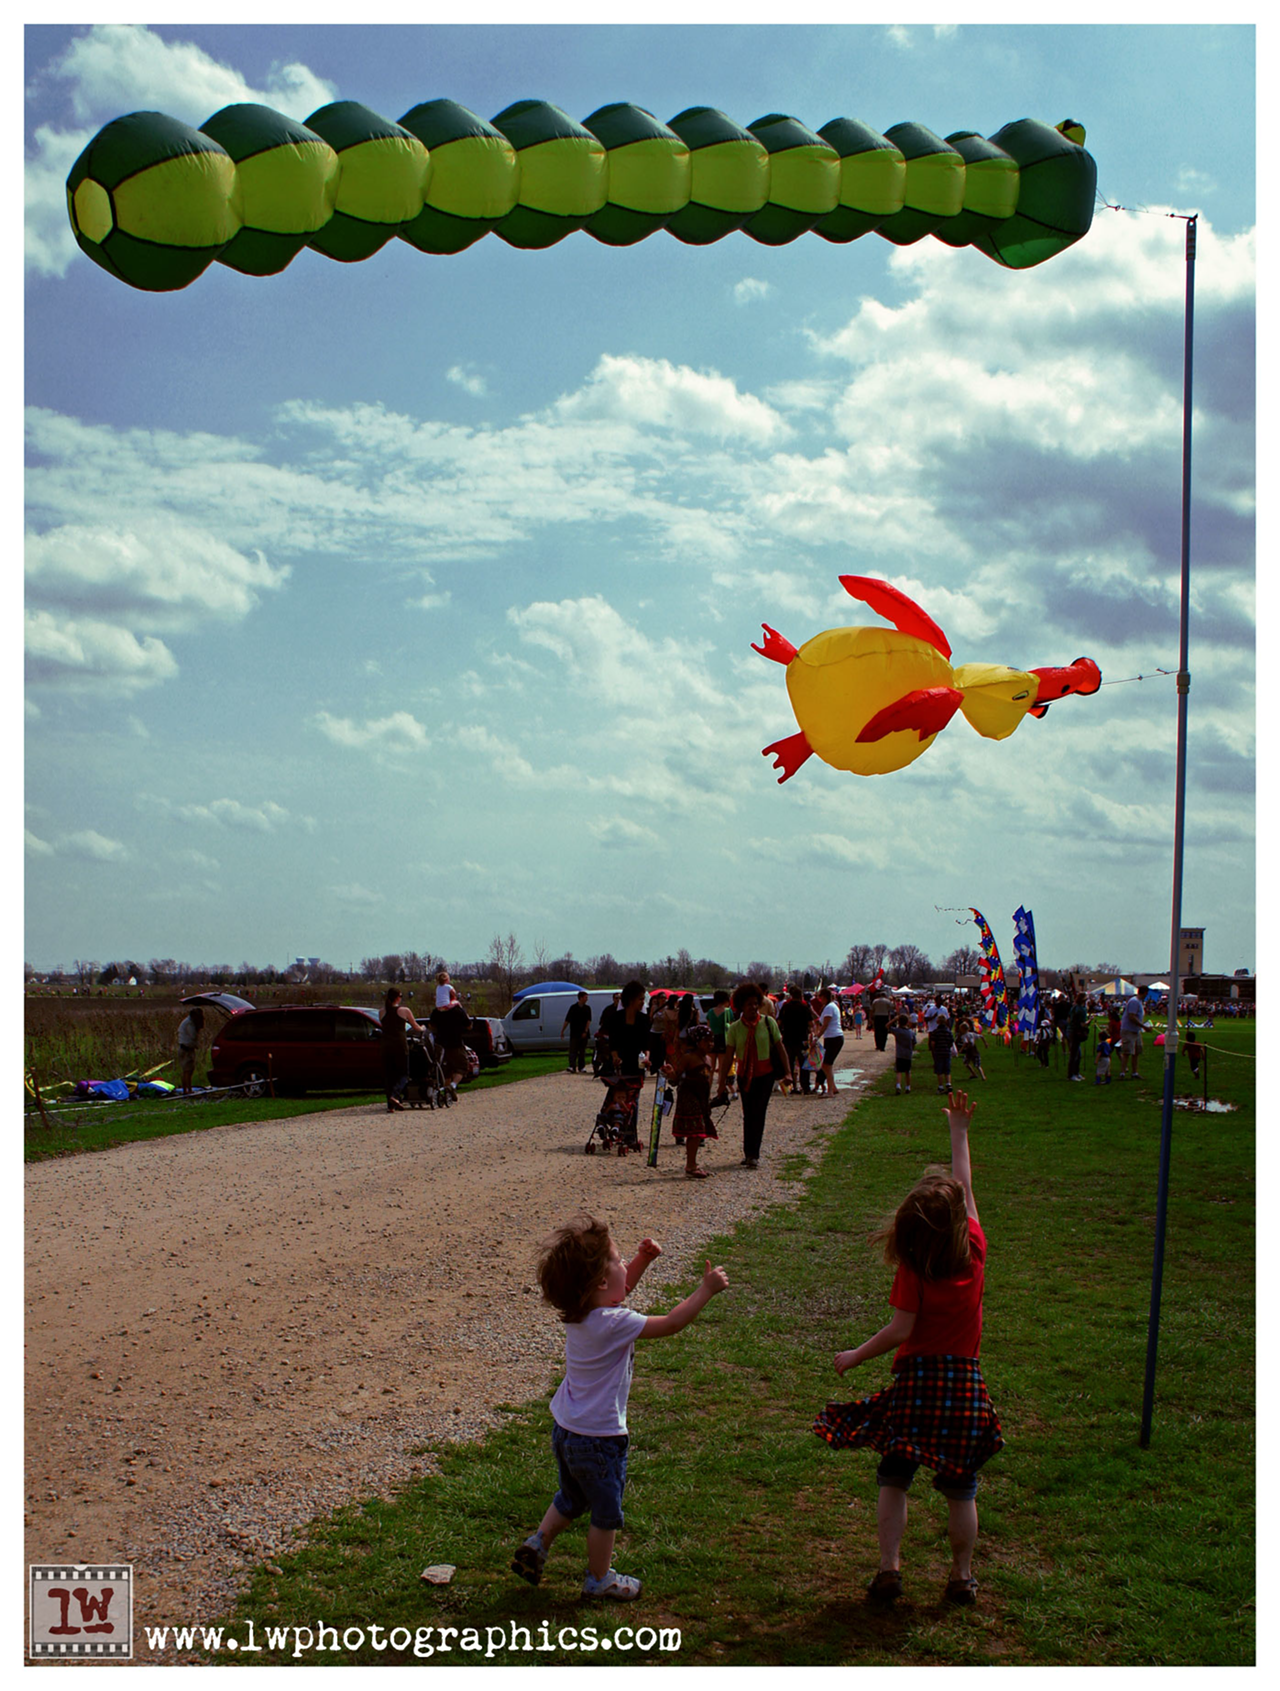 AirWaves Kite Fest